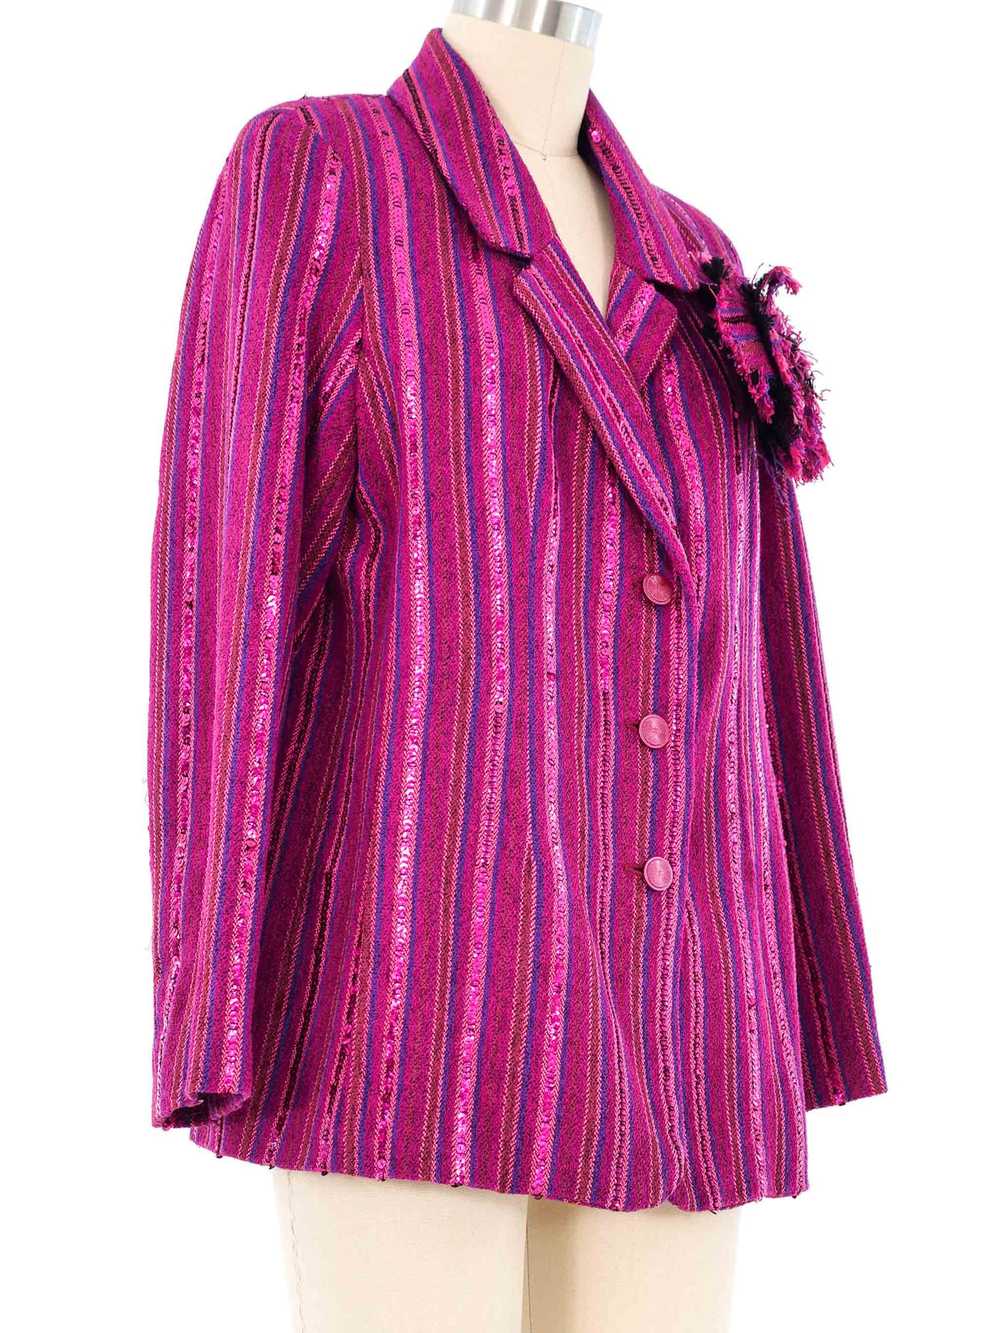 2001 Chanel Sequin Trimmed Jacket - image 3